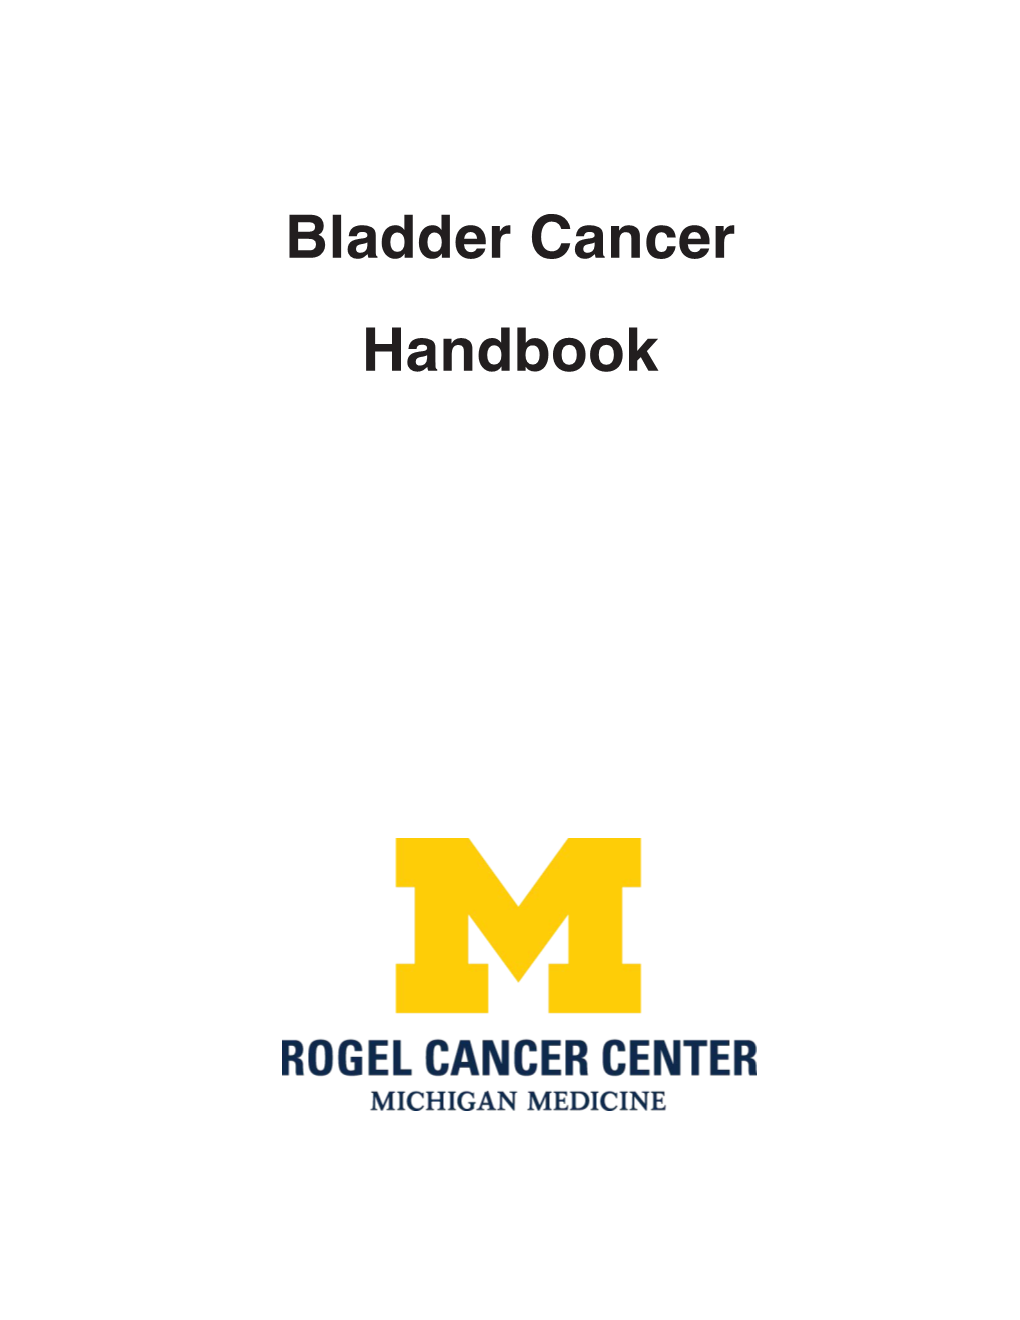 Bladder Cancer Handbook